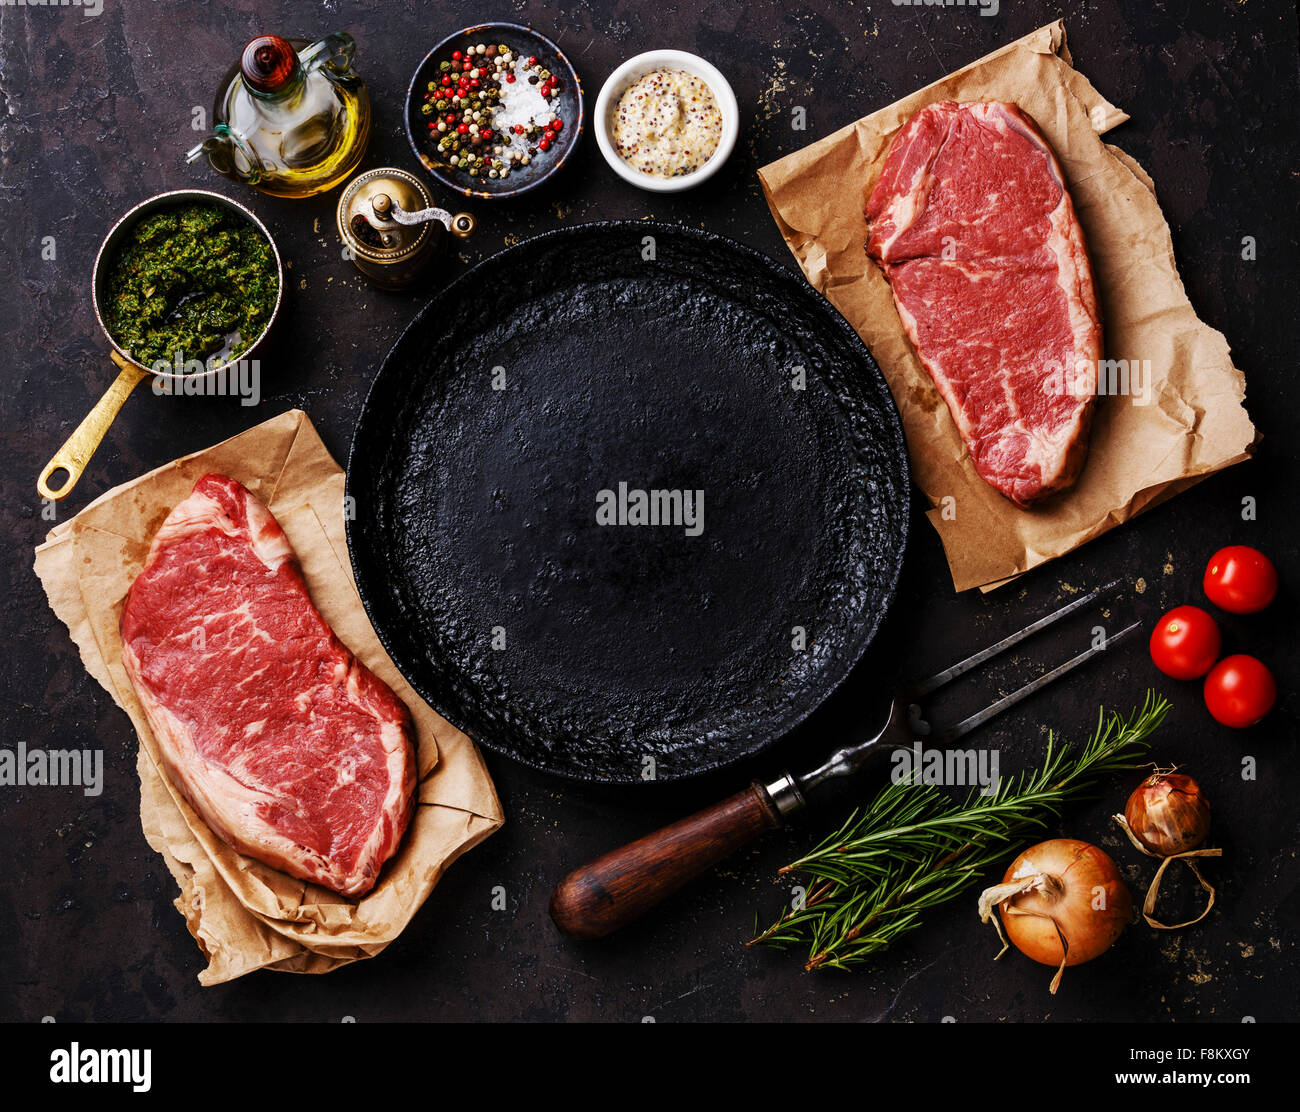 Biftecks de contre-filet de viande fraîche de matières premières avec des ingrédients autour de poêle sur fond sombre Banque D'Images